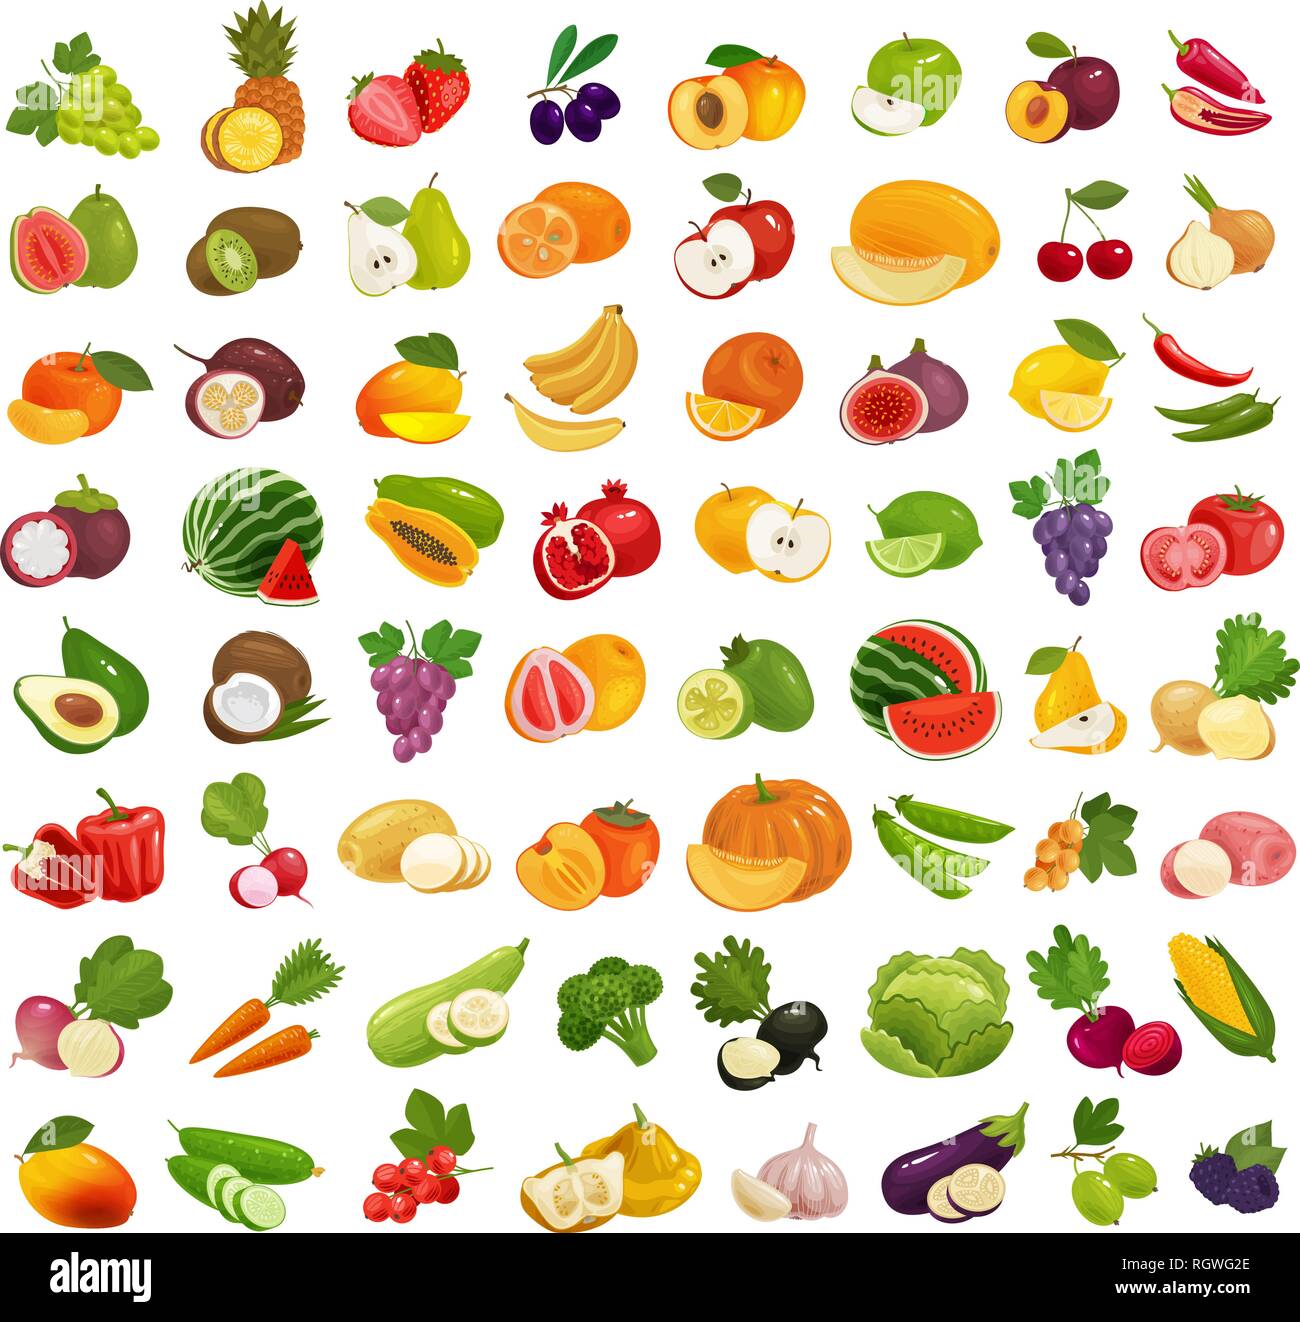 Eingestellt von Obst und Gemüse. Frische Lebensmittel, gesunde Ernährung Konzept. Vector Illustration Stock Vektor